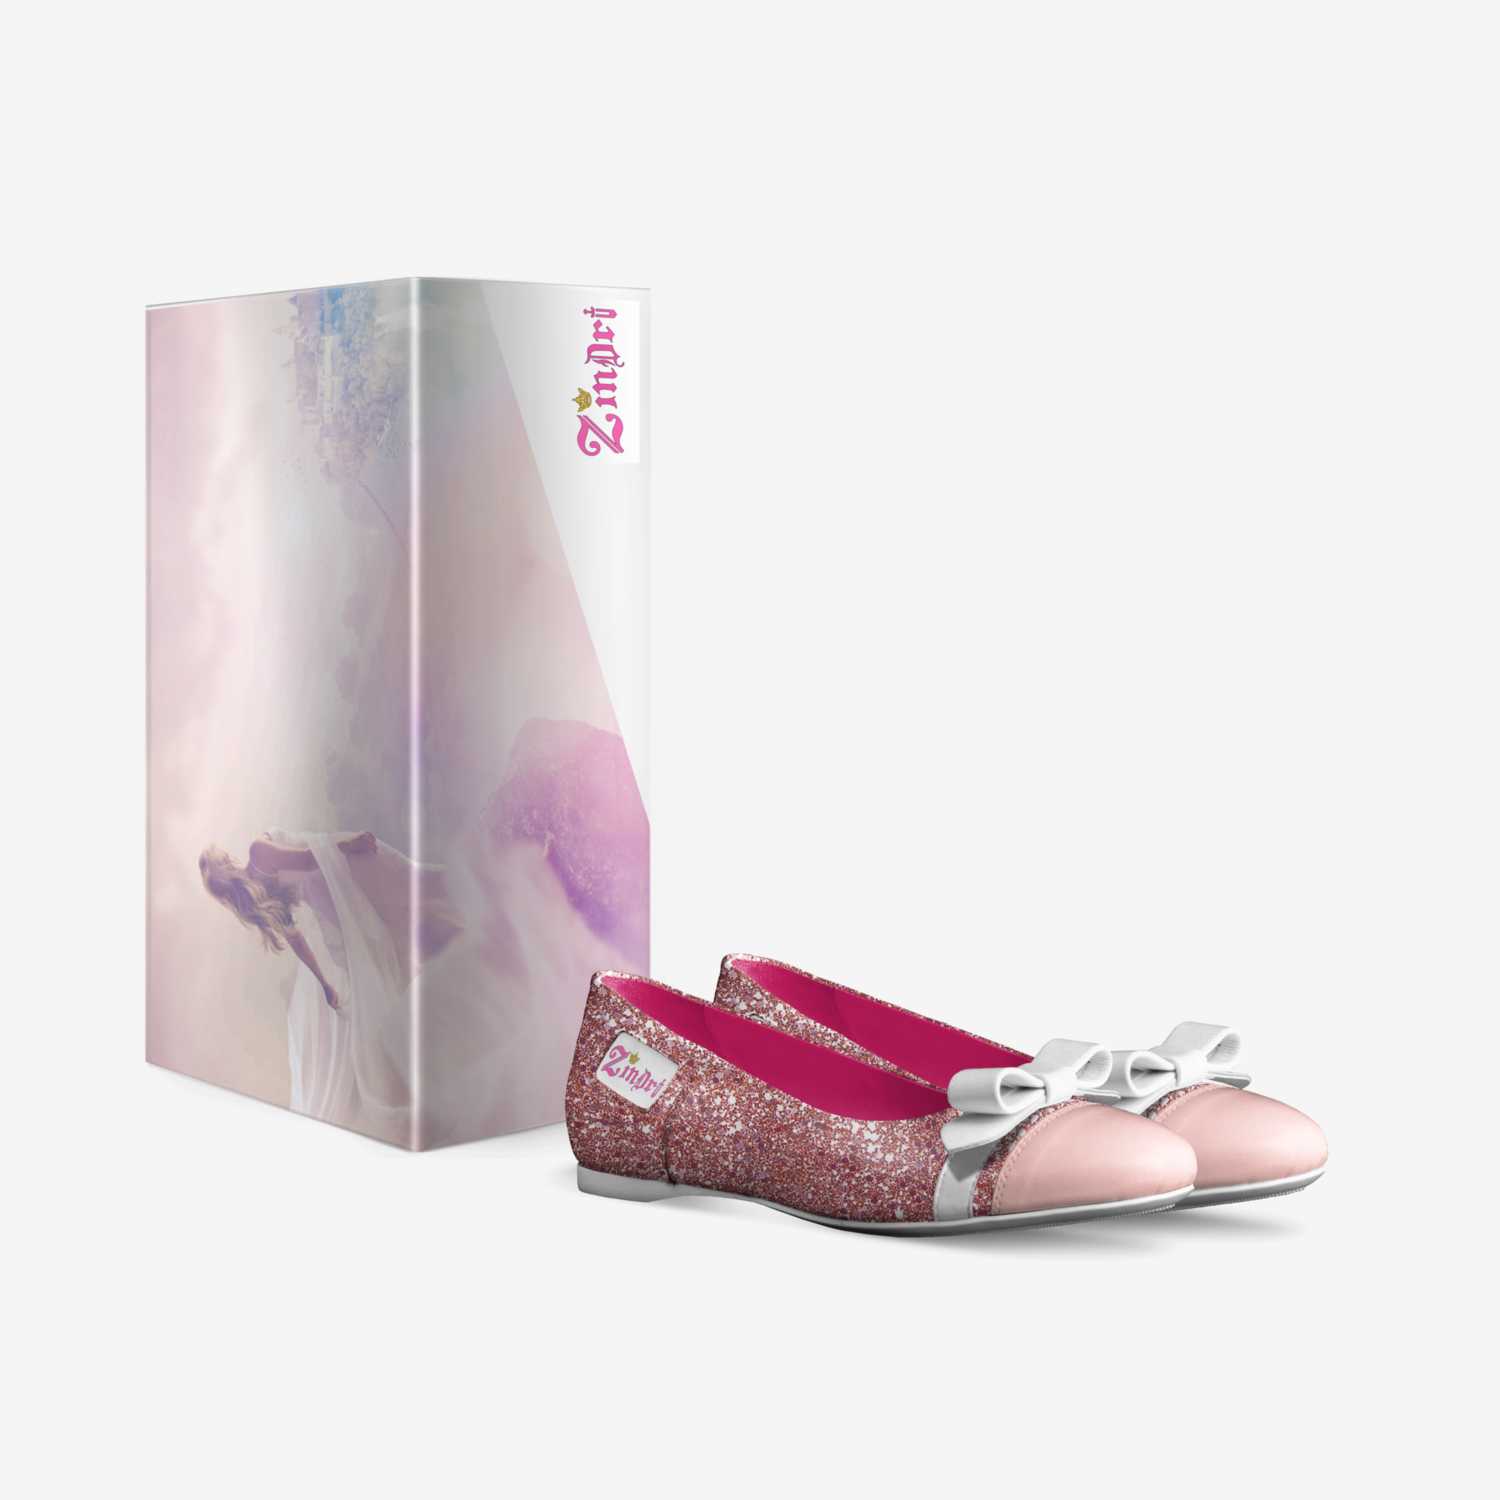 Shekinah  custom made in Italy shoes by Zindri Ward | Box view